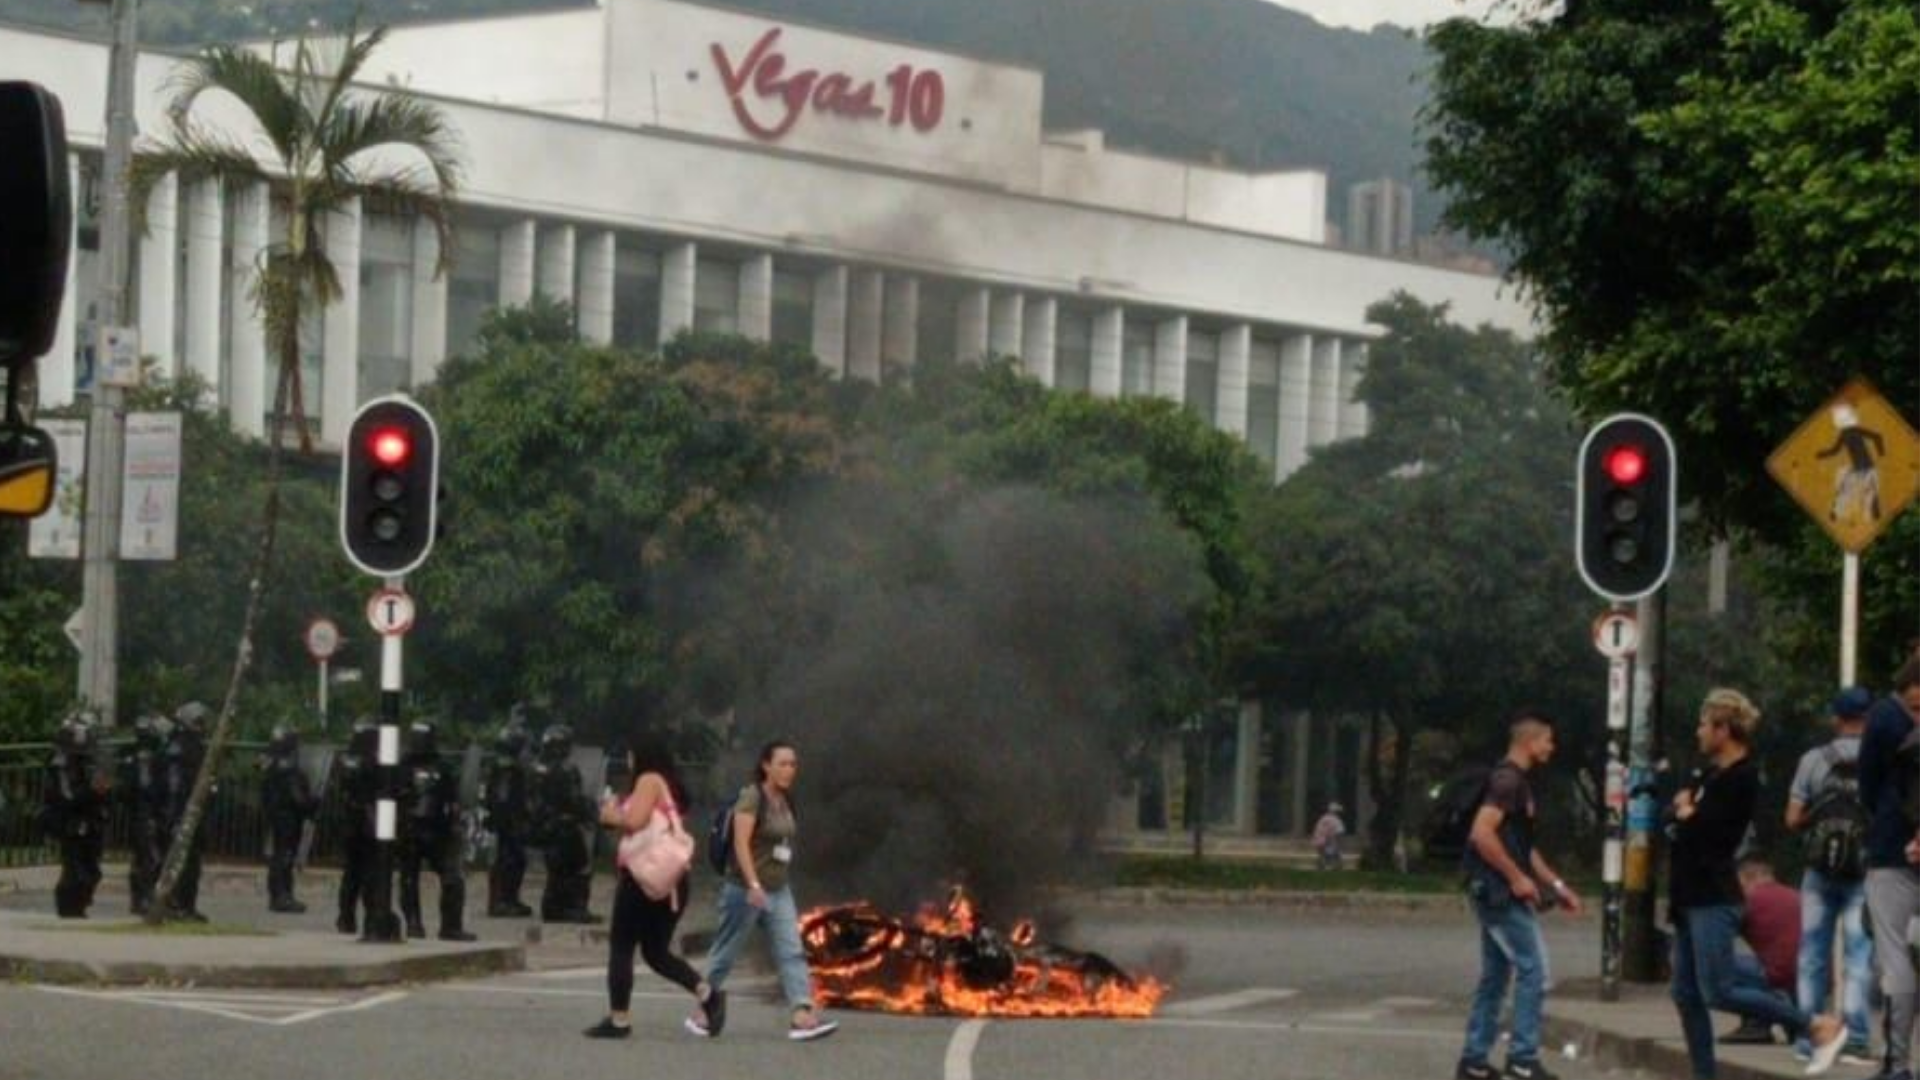 Incineran una moto en medio de protestas en el sector El Poblado de Medellín.
Foto: Denuncias Antioquia